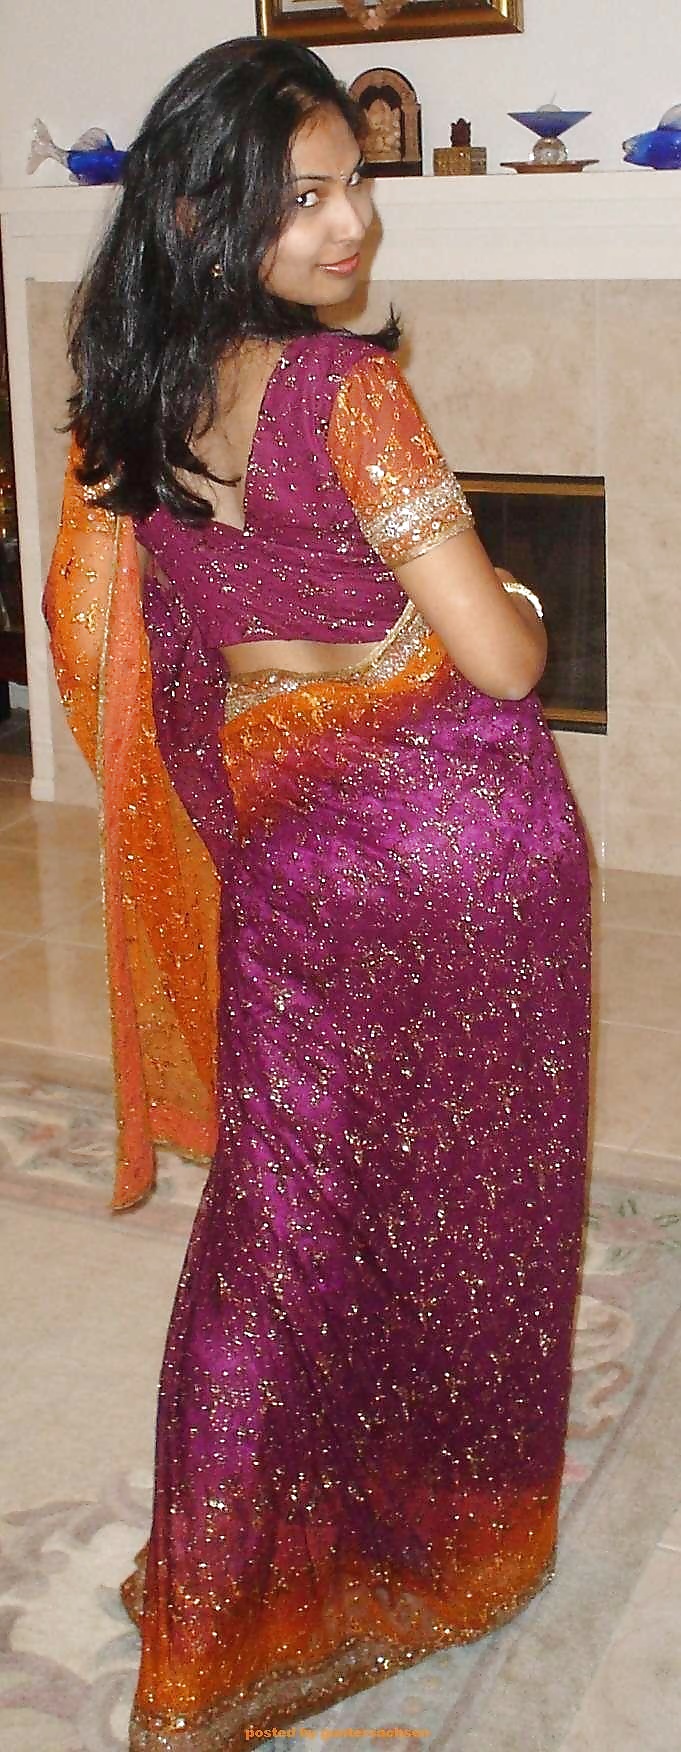 Indian Gf Annu In Saree Indian Desi Porn Set 7 6 22 Pics